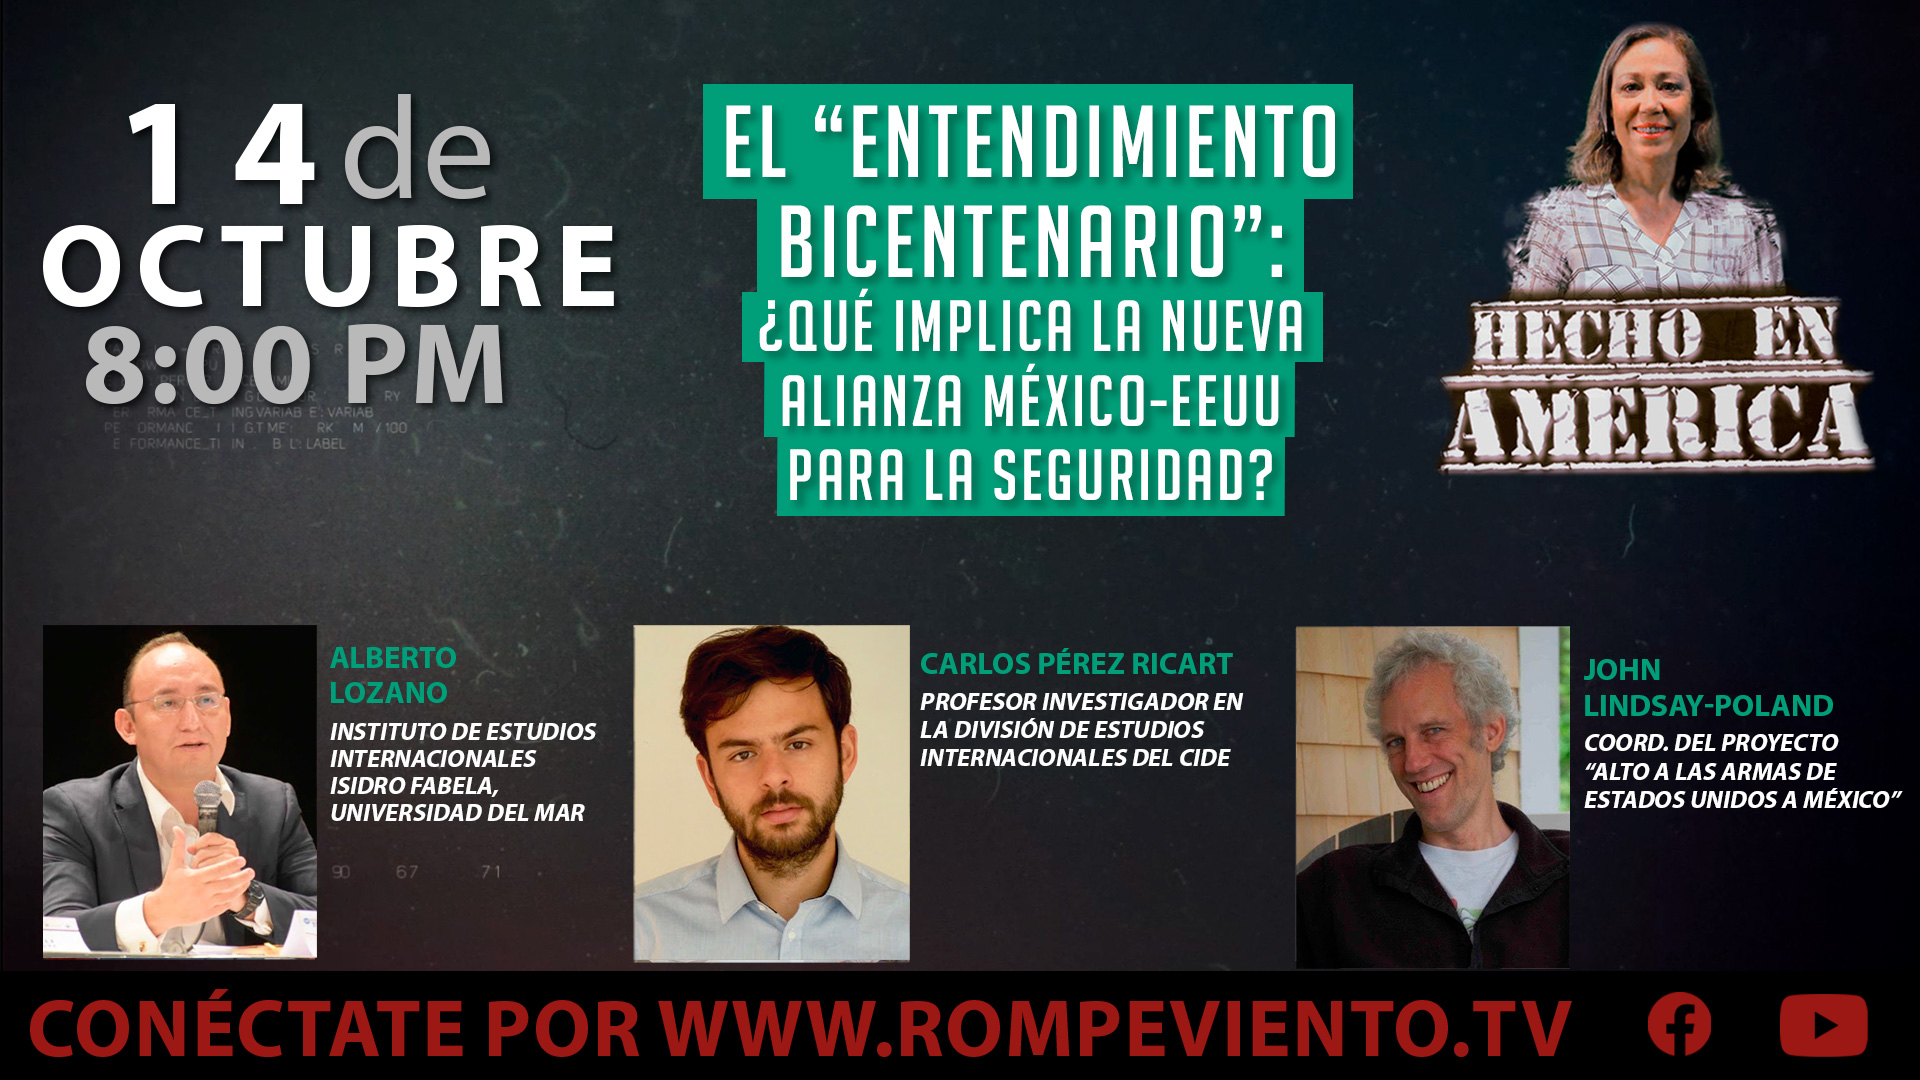 El Entendimiento Bicentenario ¿Qué implica la alianza México-EEUU en seguridad? - Hecho en América